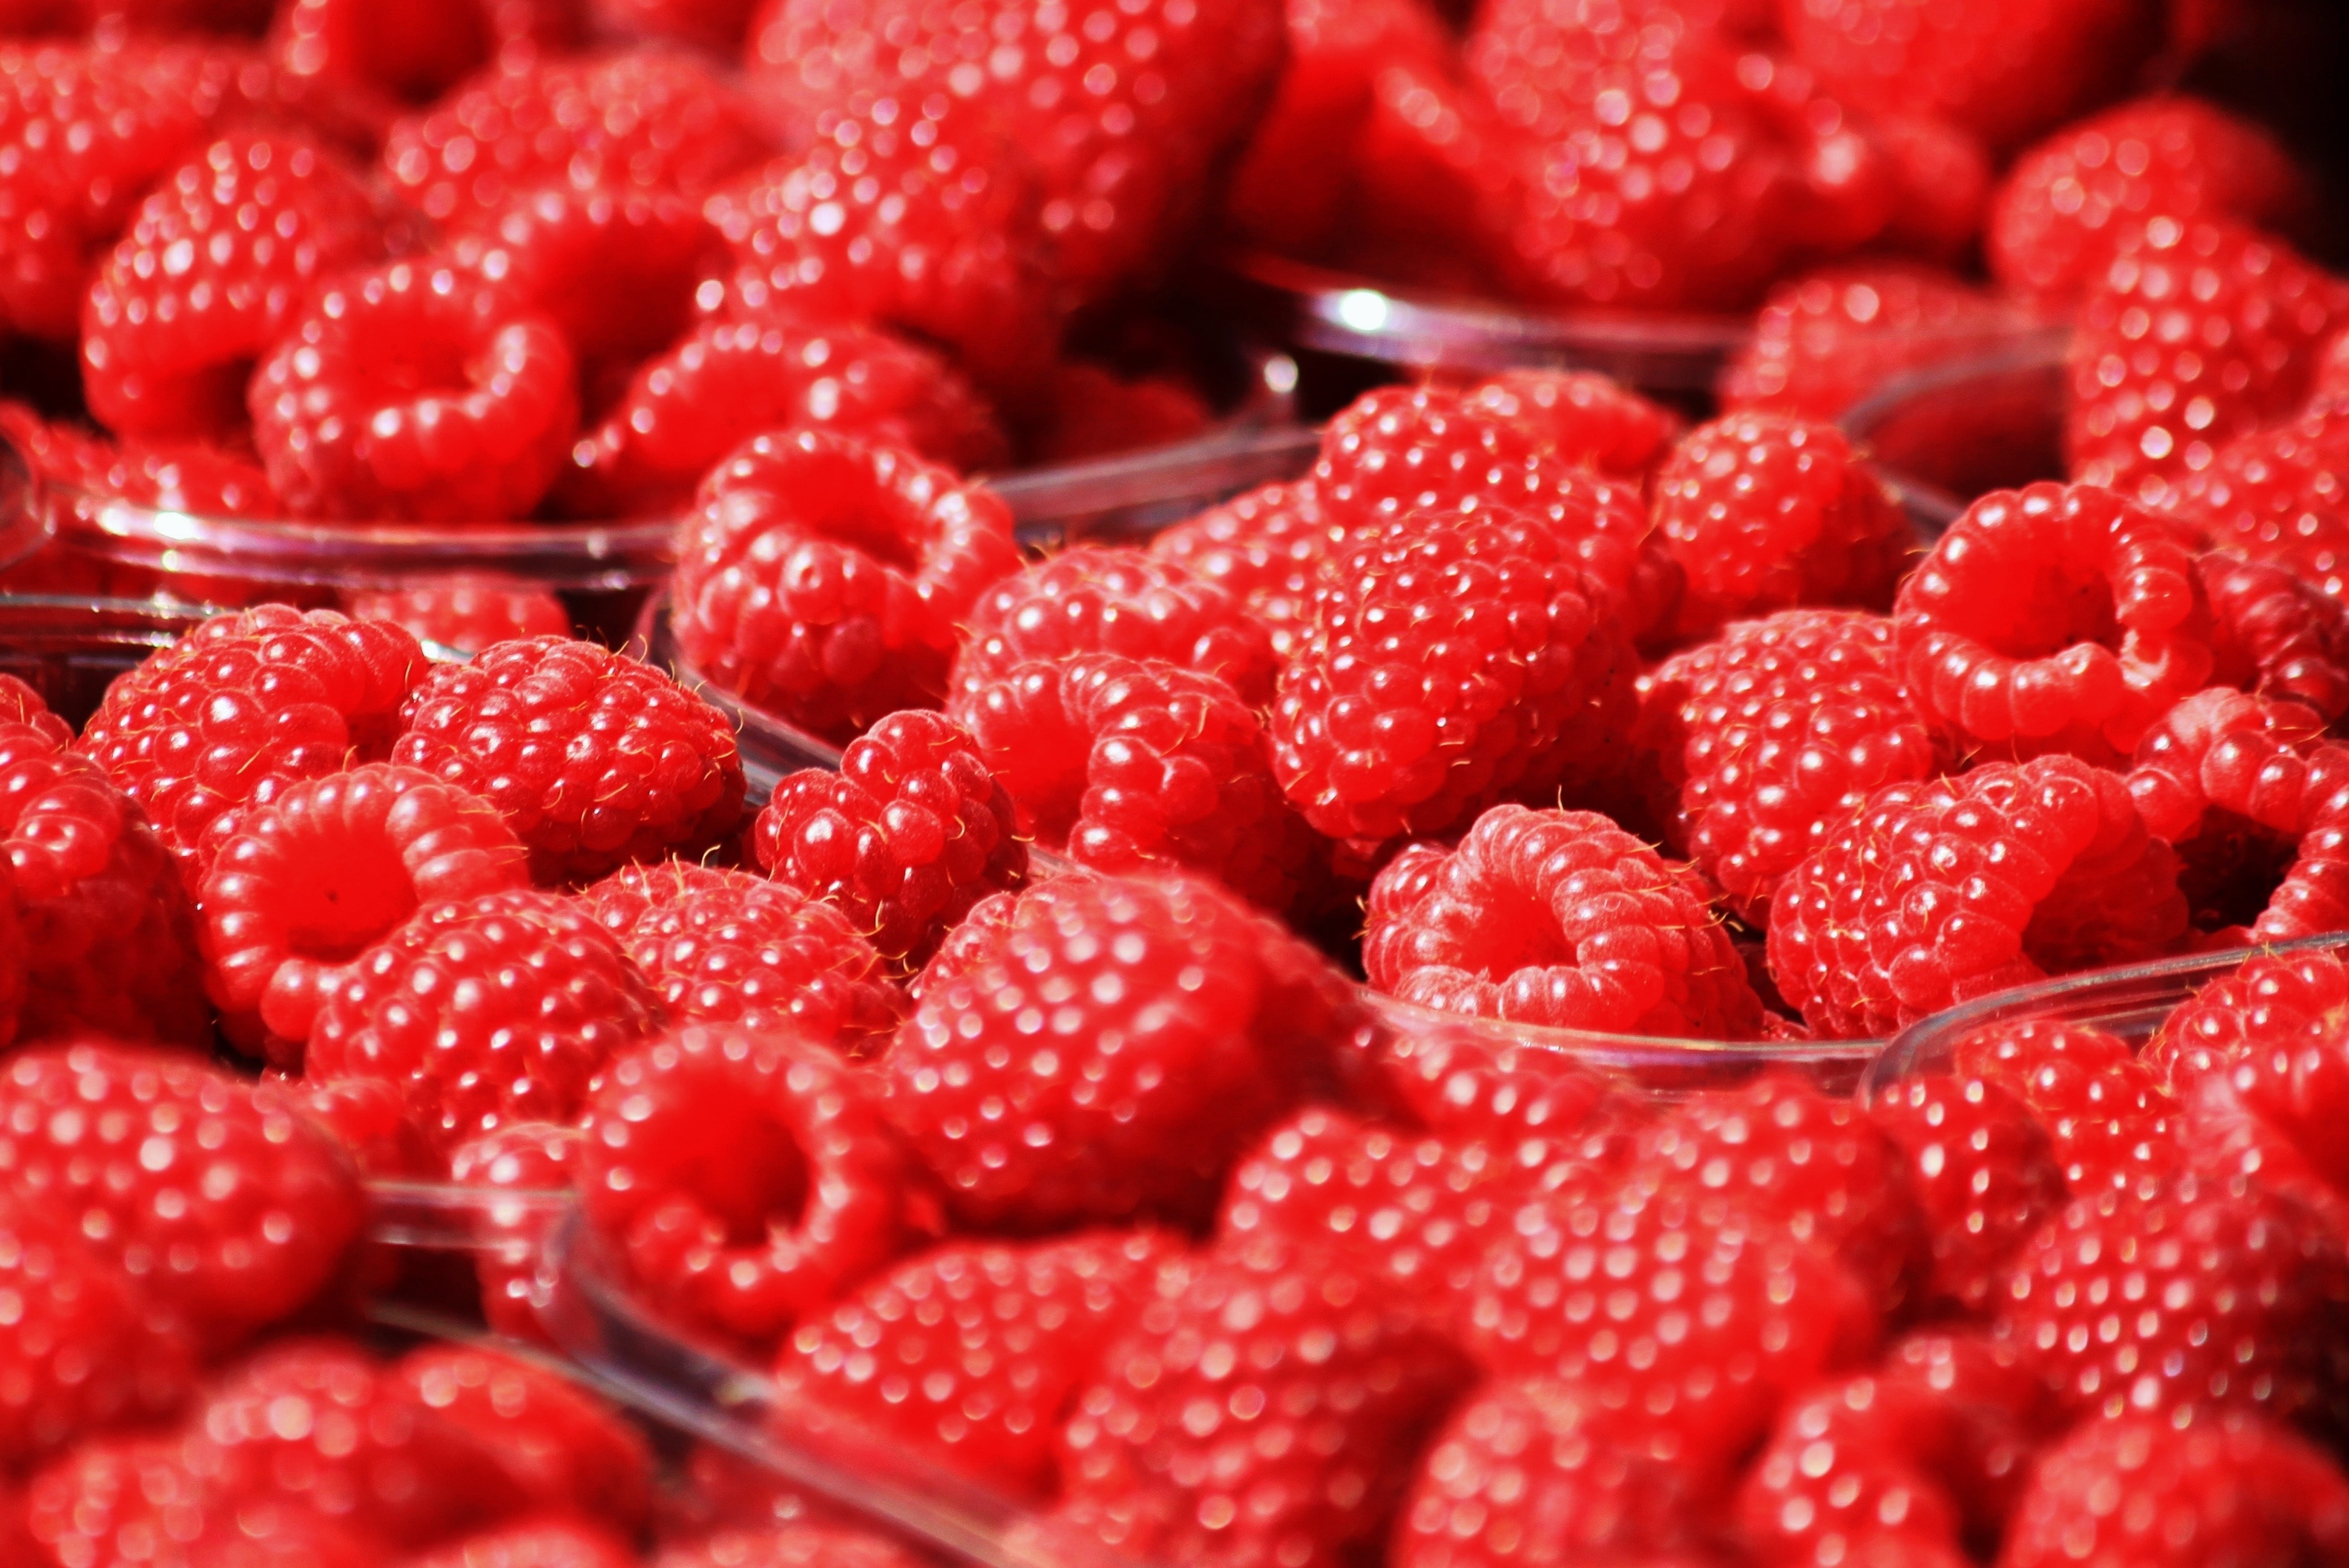 壁纸 红树莓微距摄影，水果特写 3840x2160 UHD 4K 高清壁纸, 图片, 照片